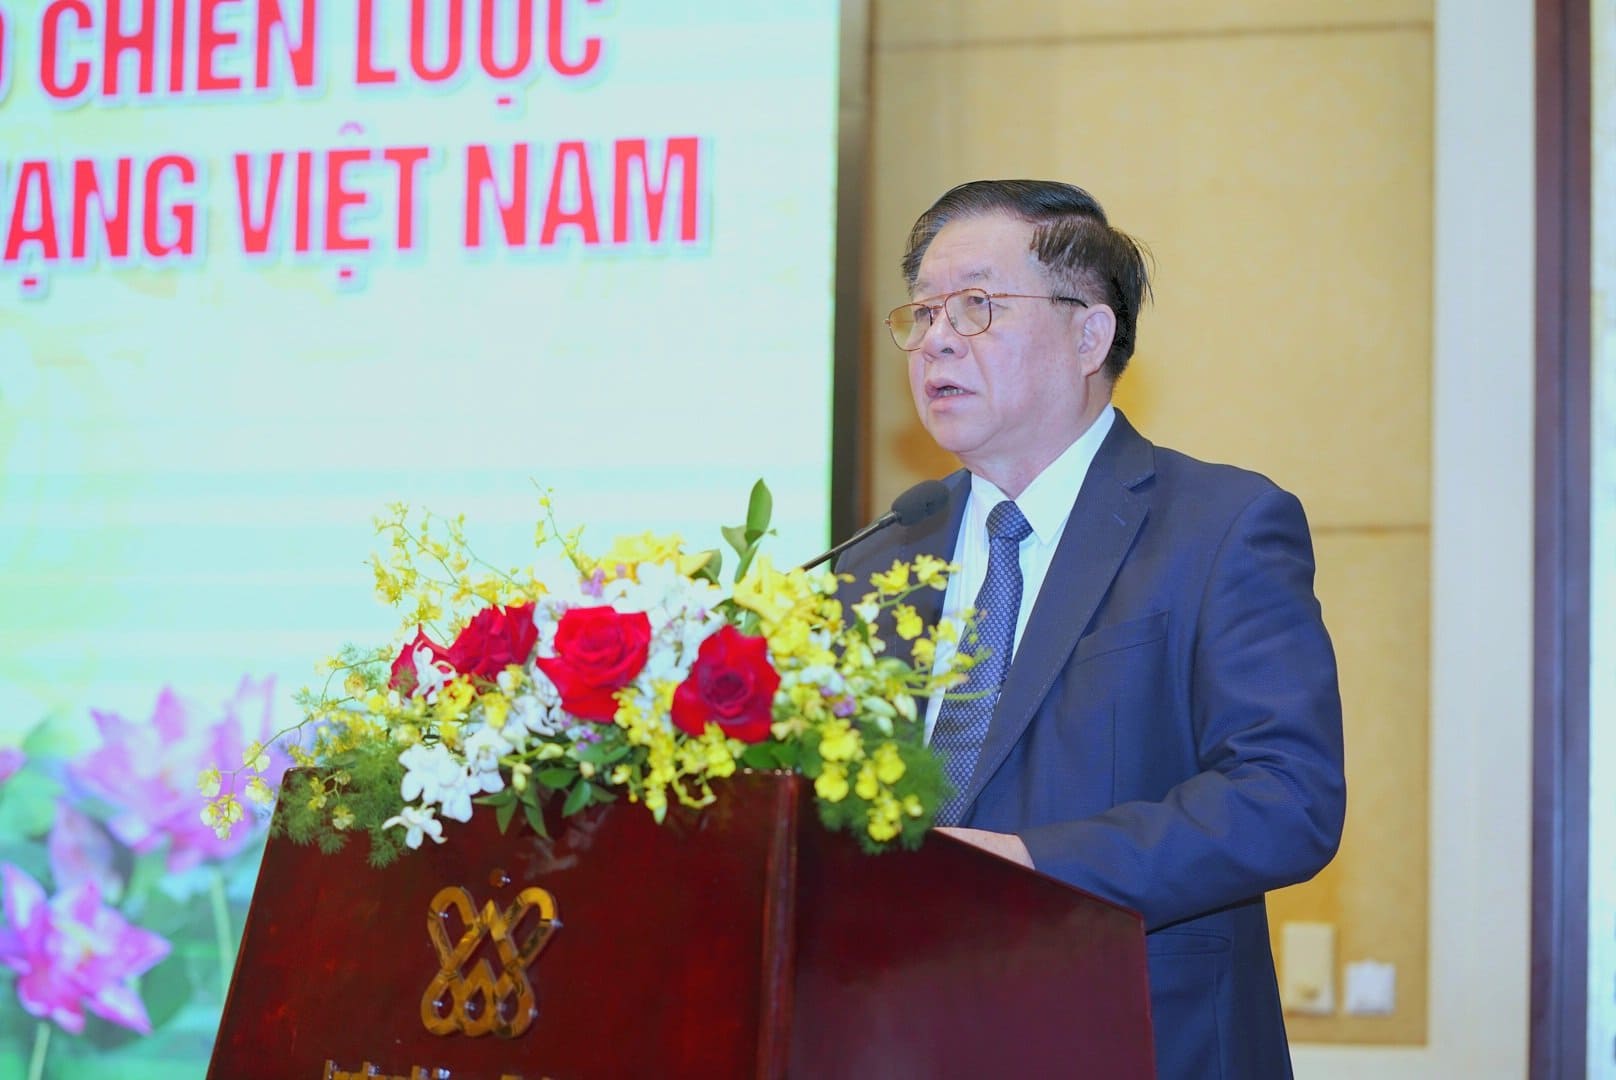 Đại tướng Nguyễn Chí Thanh - người học trò xuất sắc của Chủ tịch Hồ Chí Minh